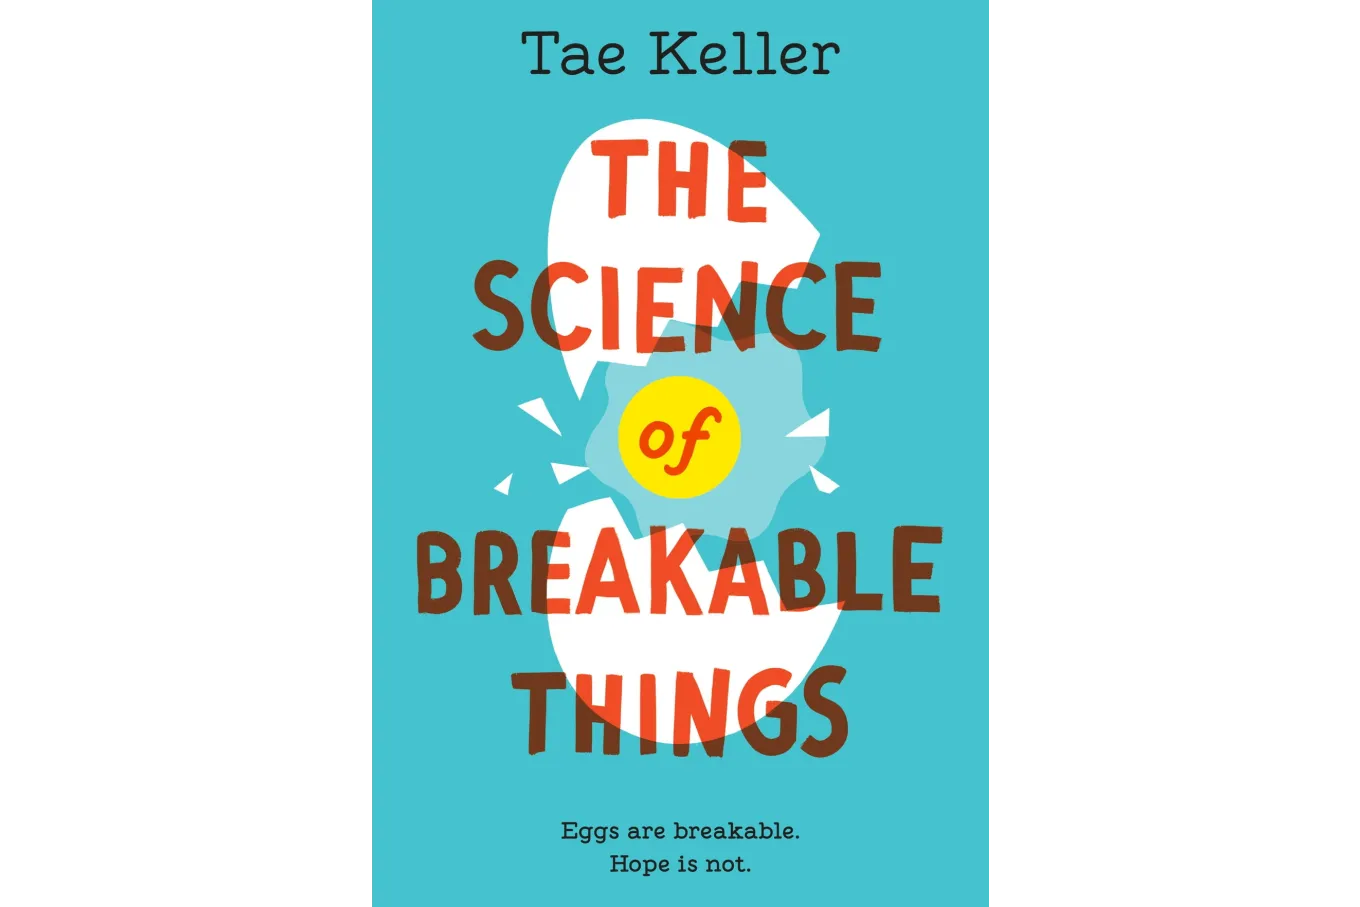 Tae Keller's The Science of Breakable Things